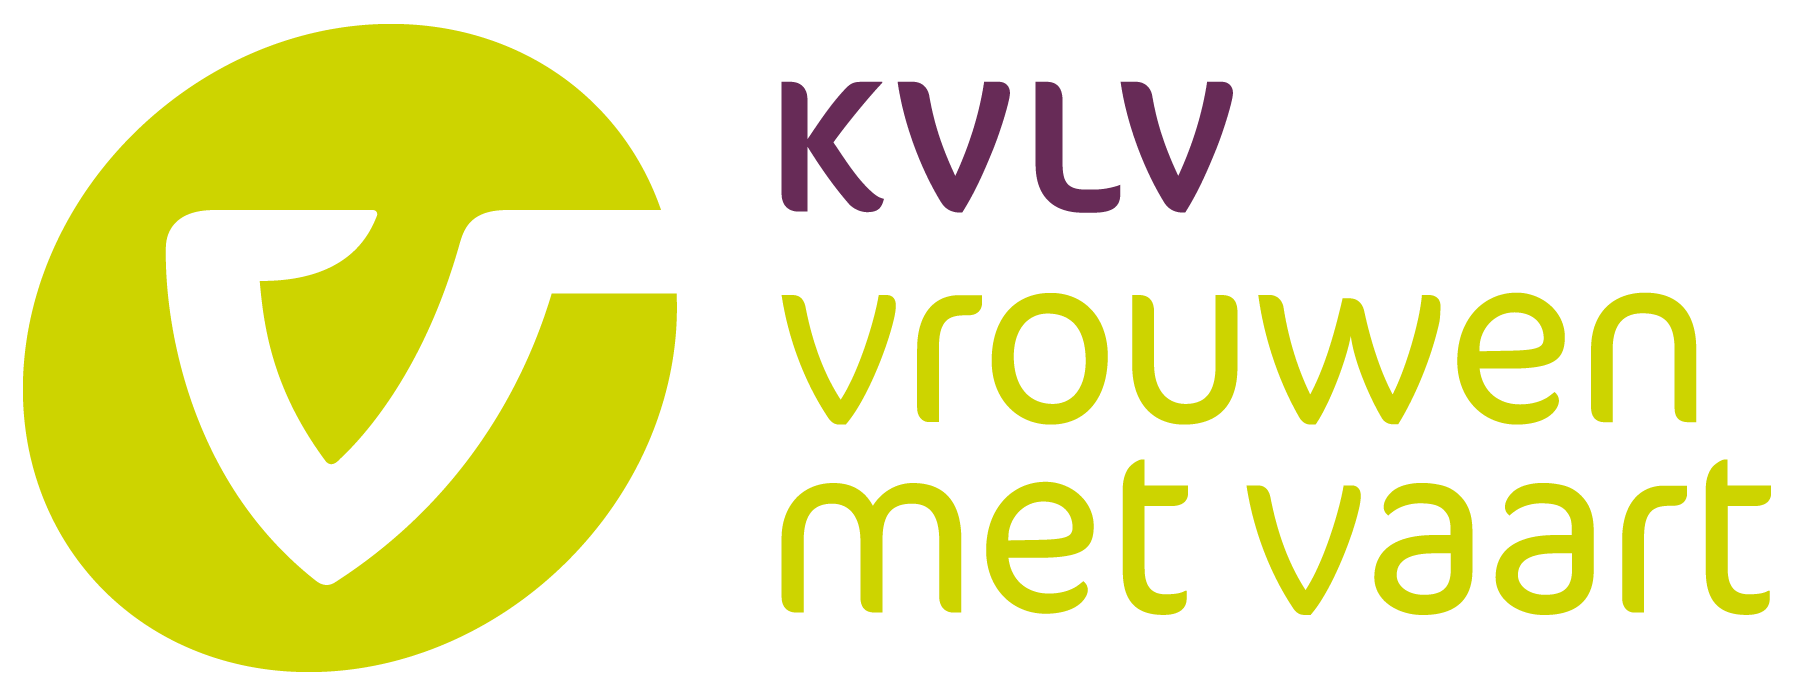 KVLV